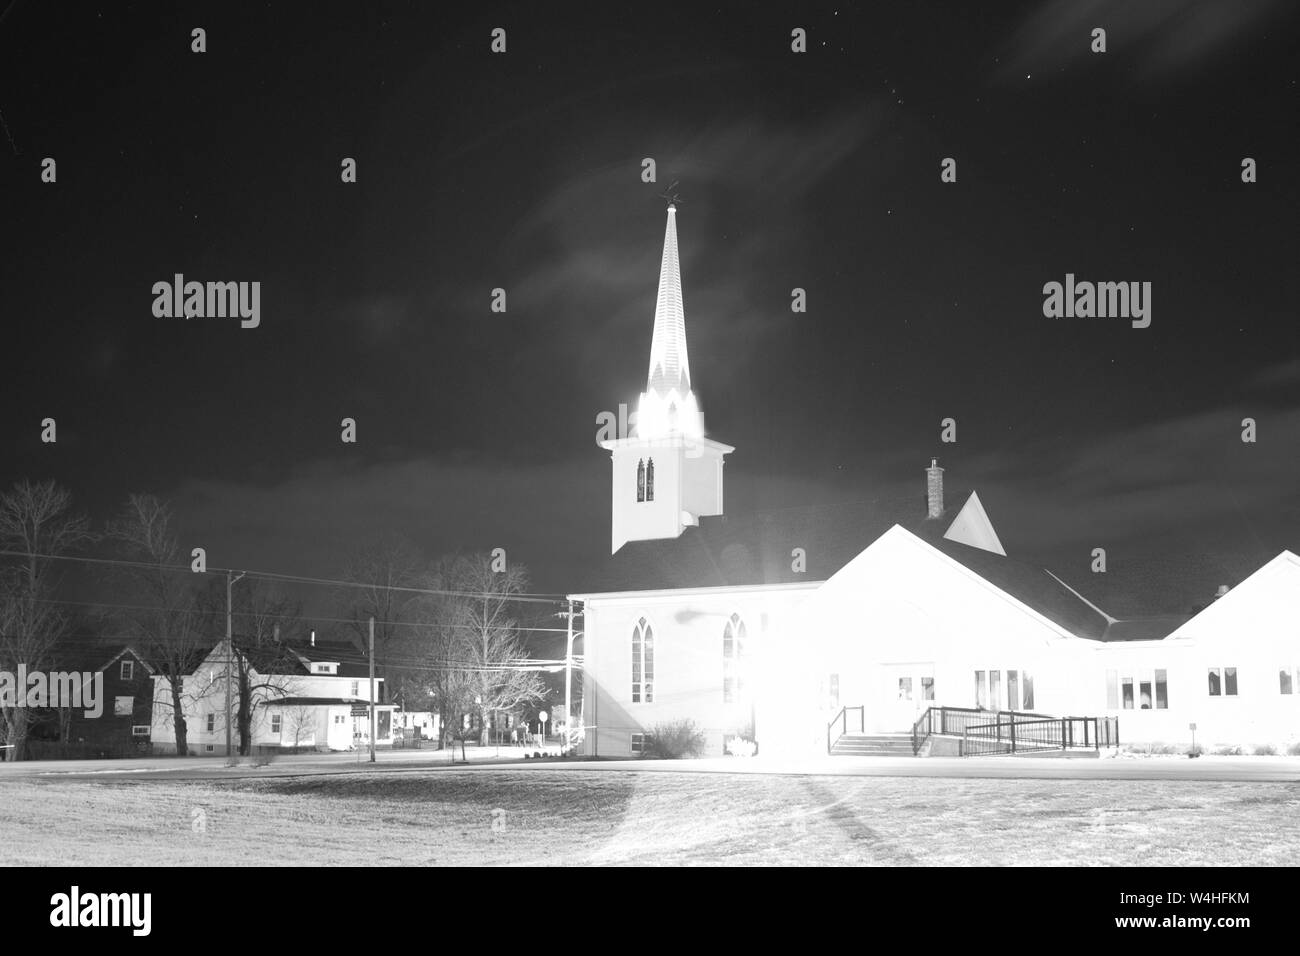 Port Williams, en Nouvelle-Écosse : le 24 décembre 2012 : étoile s'allumer sur une photo de minuit du Port Williams United Baptist Church, un point de repère local Banque D'Images